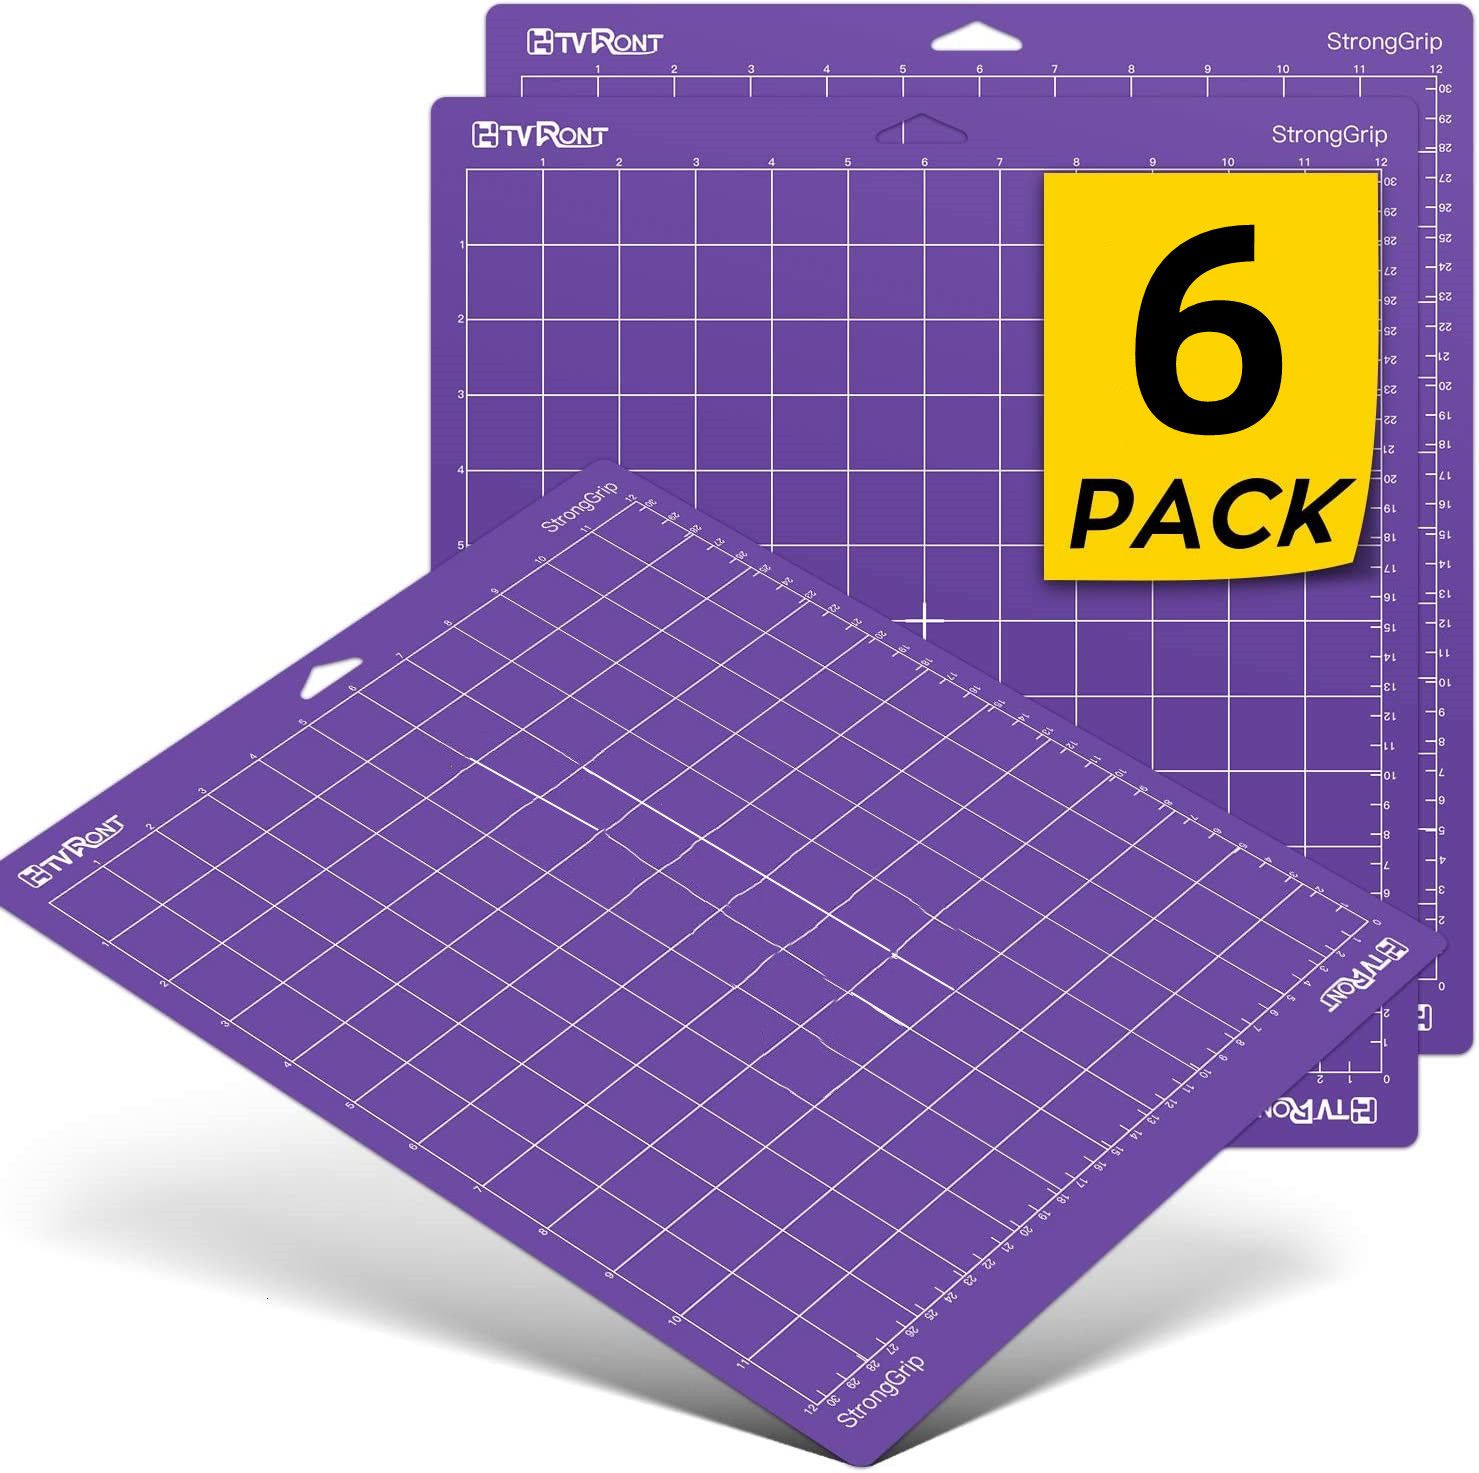 6 Packpurple-12x12in (30 x 30 cm